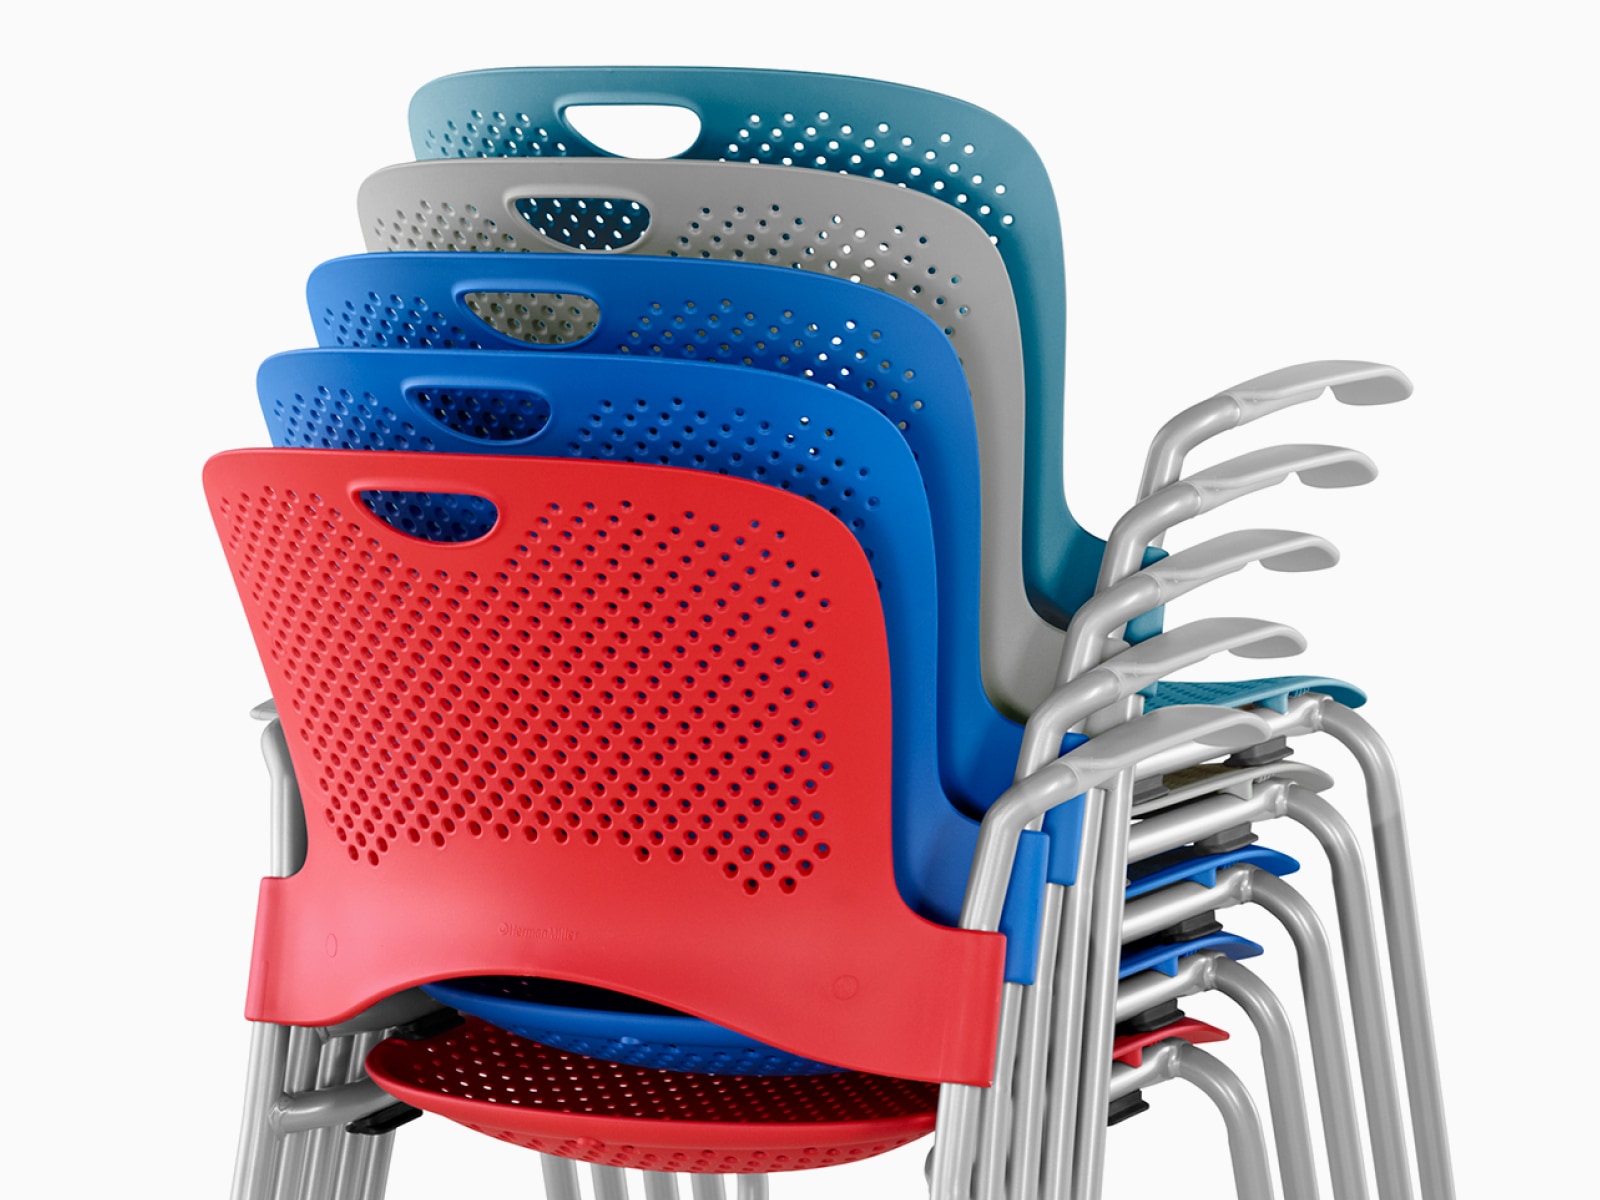 Vista posterior de sillas Caper rojas, azules, grises y turquesas, apiladas de cinco en cinco.